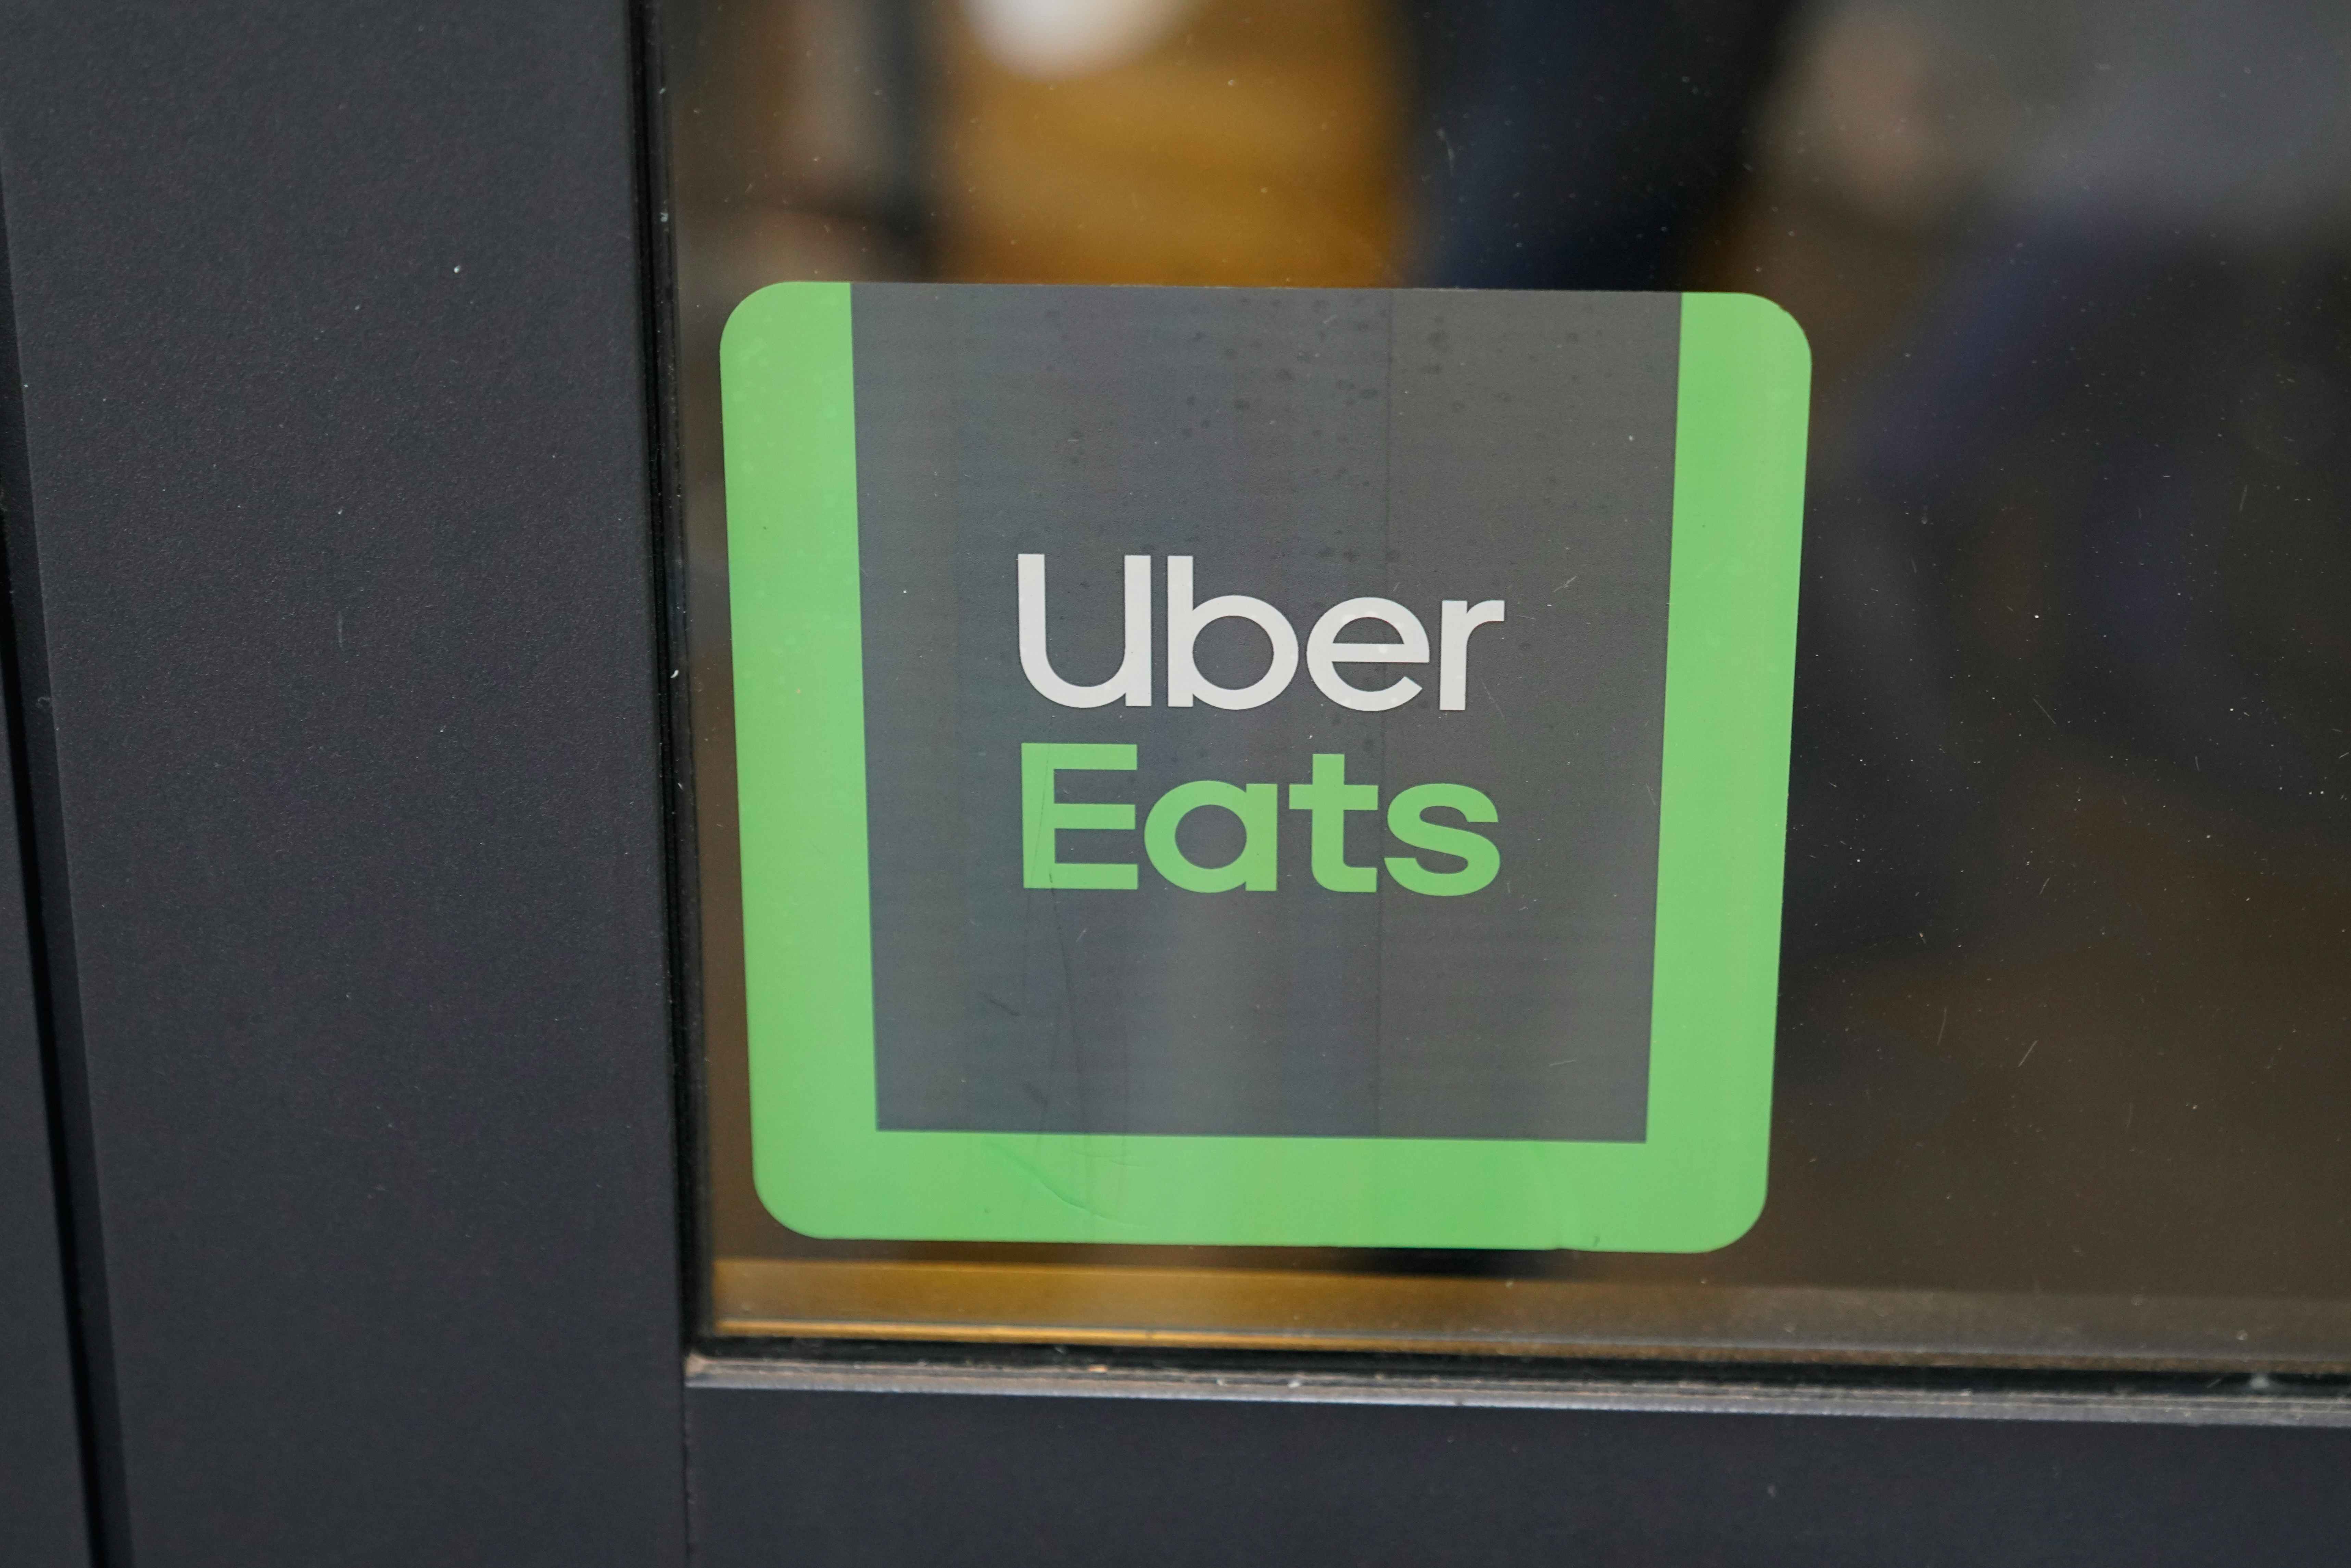 An Uber Eats sticker on a glass restaurant window.